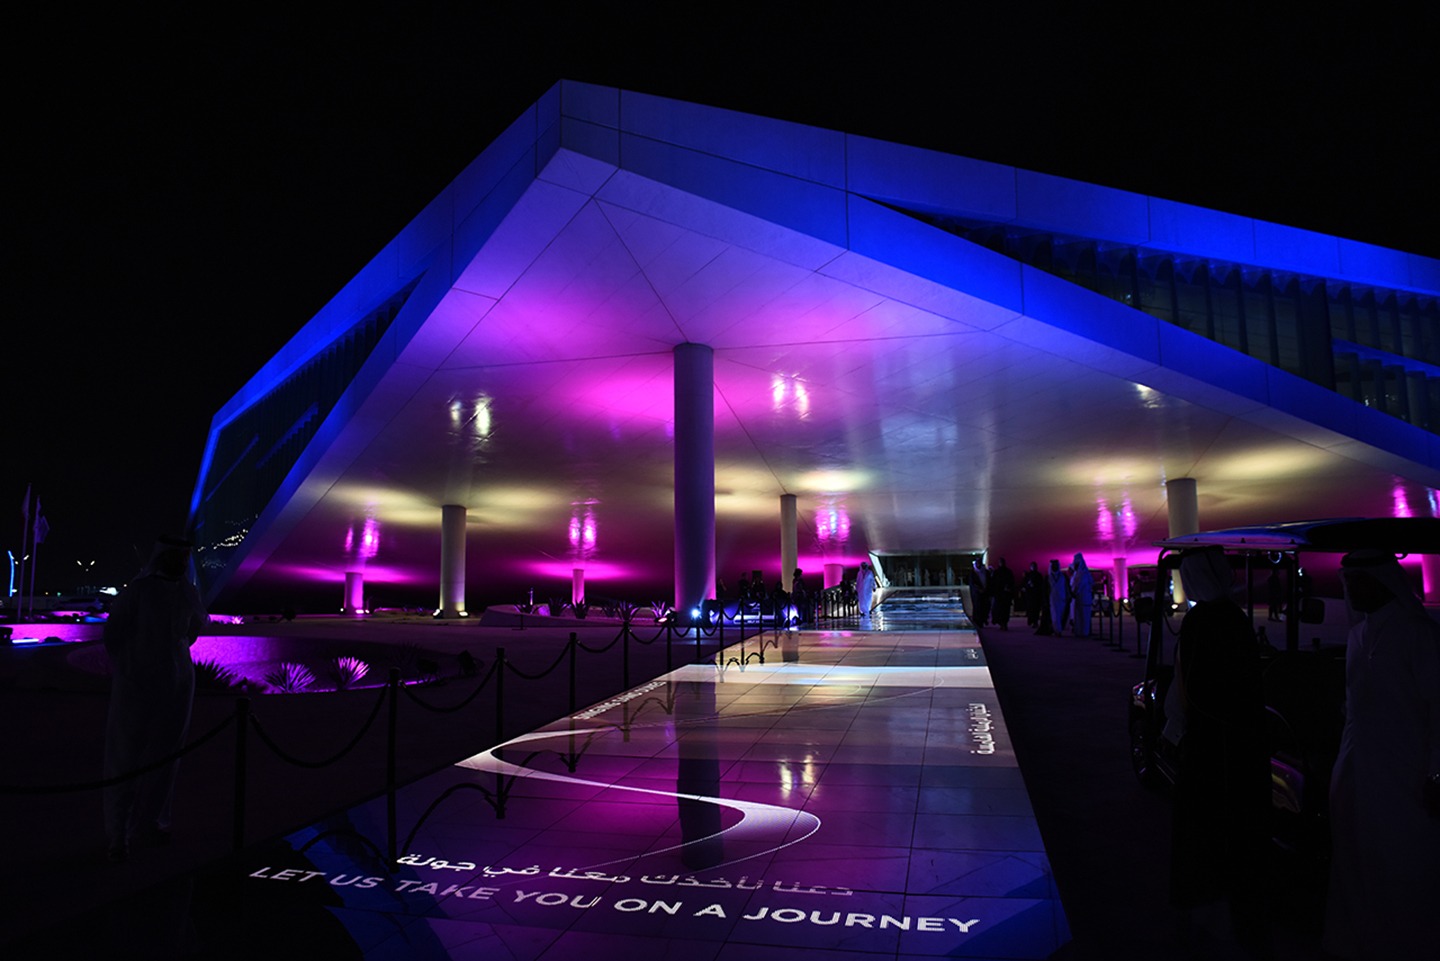 Eröffnung der Nationalbibliothek in Qatar